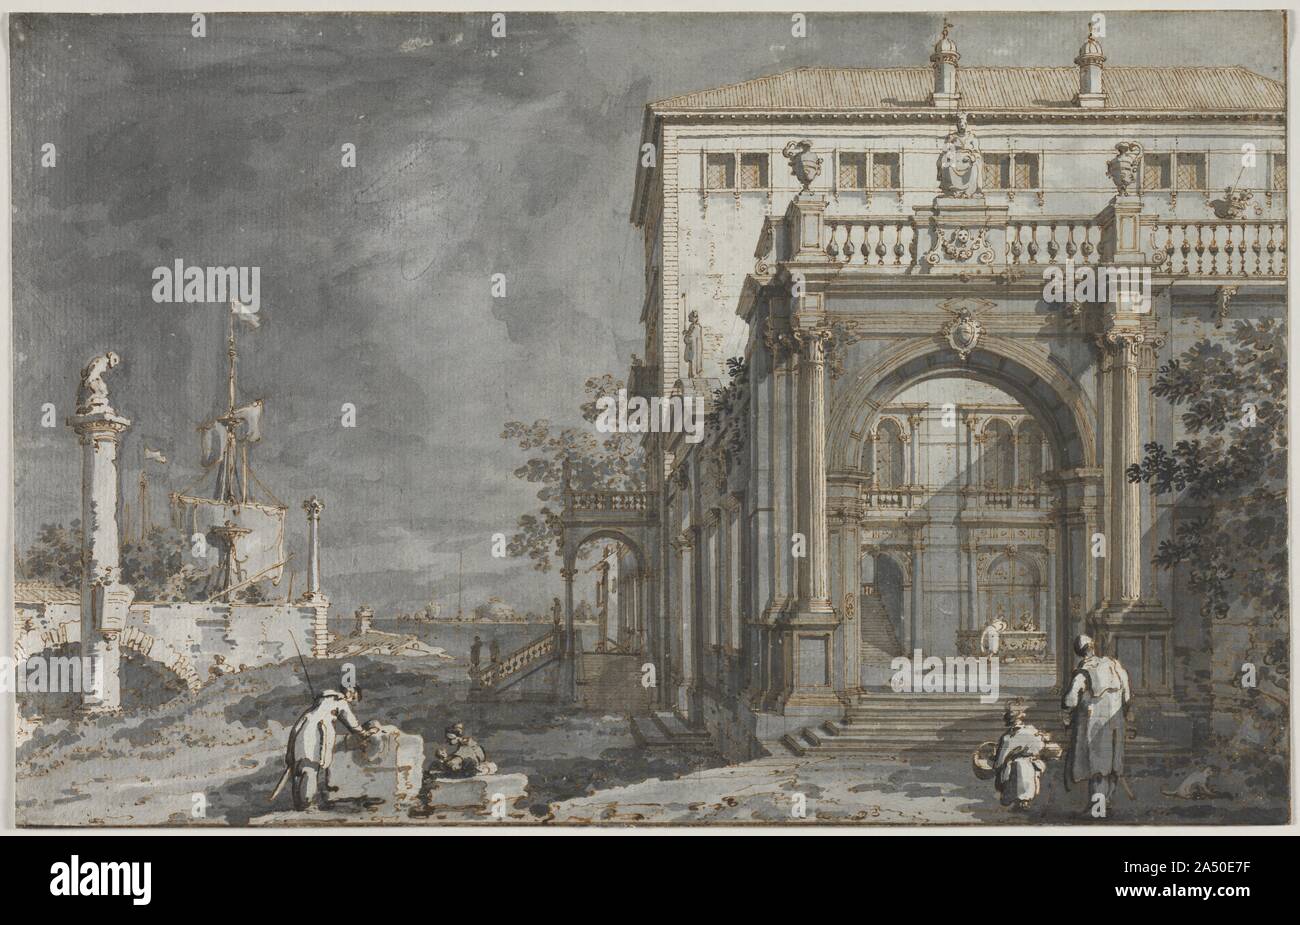 Capriccio: ein Palast mit einem Innenhof, der von der Lagune, C. 1750-1755. Venedig war ein wichtiges Ziel für das 18. Jahrhundert Aristokraten, Europas kulturelle Stätten auf der Grand Tour, und es war in Mode Home a Canaletto veduta zu bringen, oder Malerei, die Reise zu gedenken. Diese Zeichnung illustriert Canalettos capricci, architektonischen Phantasien der Zusammenlegung von Gebäuden, archäologischen Funden und anderen architektonischen Elementen in imaginäre und oft skurrilen Kombinationen. Die Aussicht ist durch die Einbeziehung der Bauern in den Vordergrund, die über ihr tägliches Geschäft gehen animiert und mehr noch durch Stockfoto